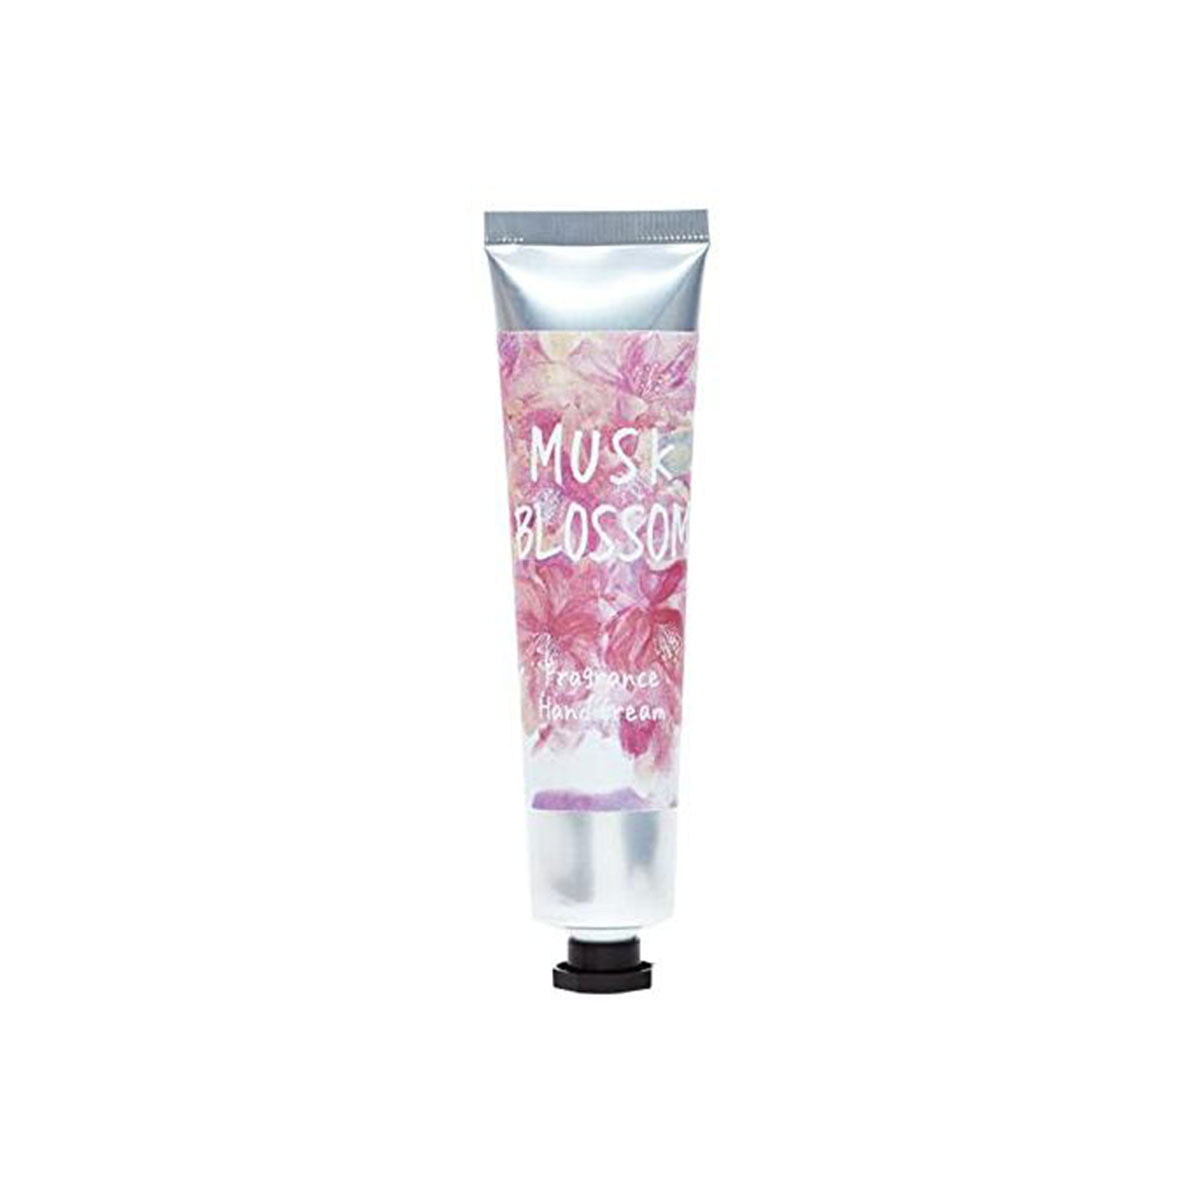 Musk Blossom Fragrance Hand Cream  38g